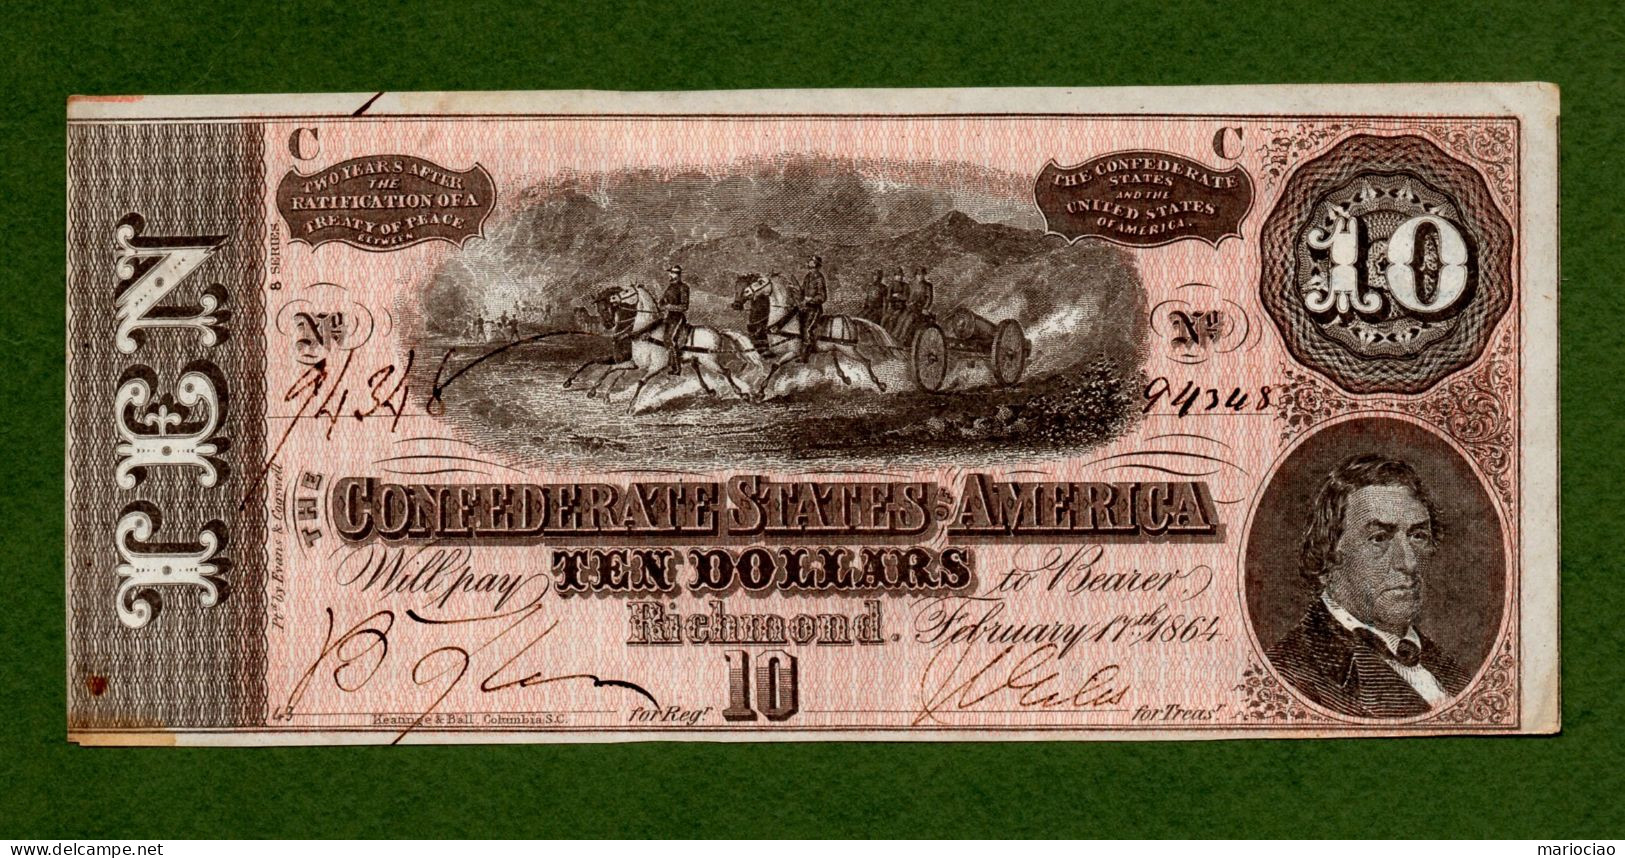 USA Note Civil War Confederate Note $10 Richmond February 17, 1864 N.94348 - Divisa Confederada (1861-1864)